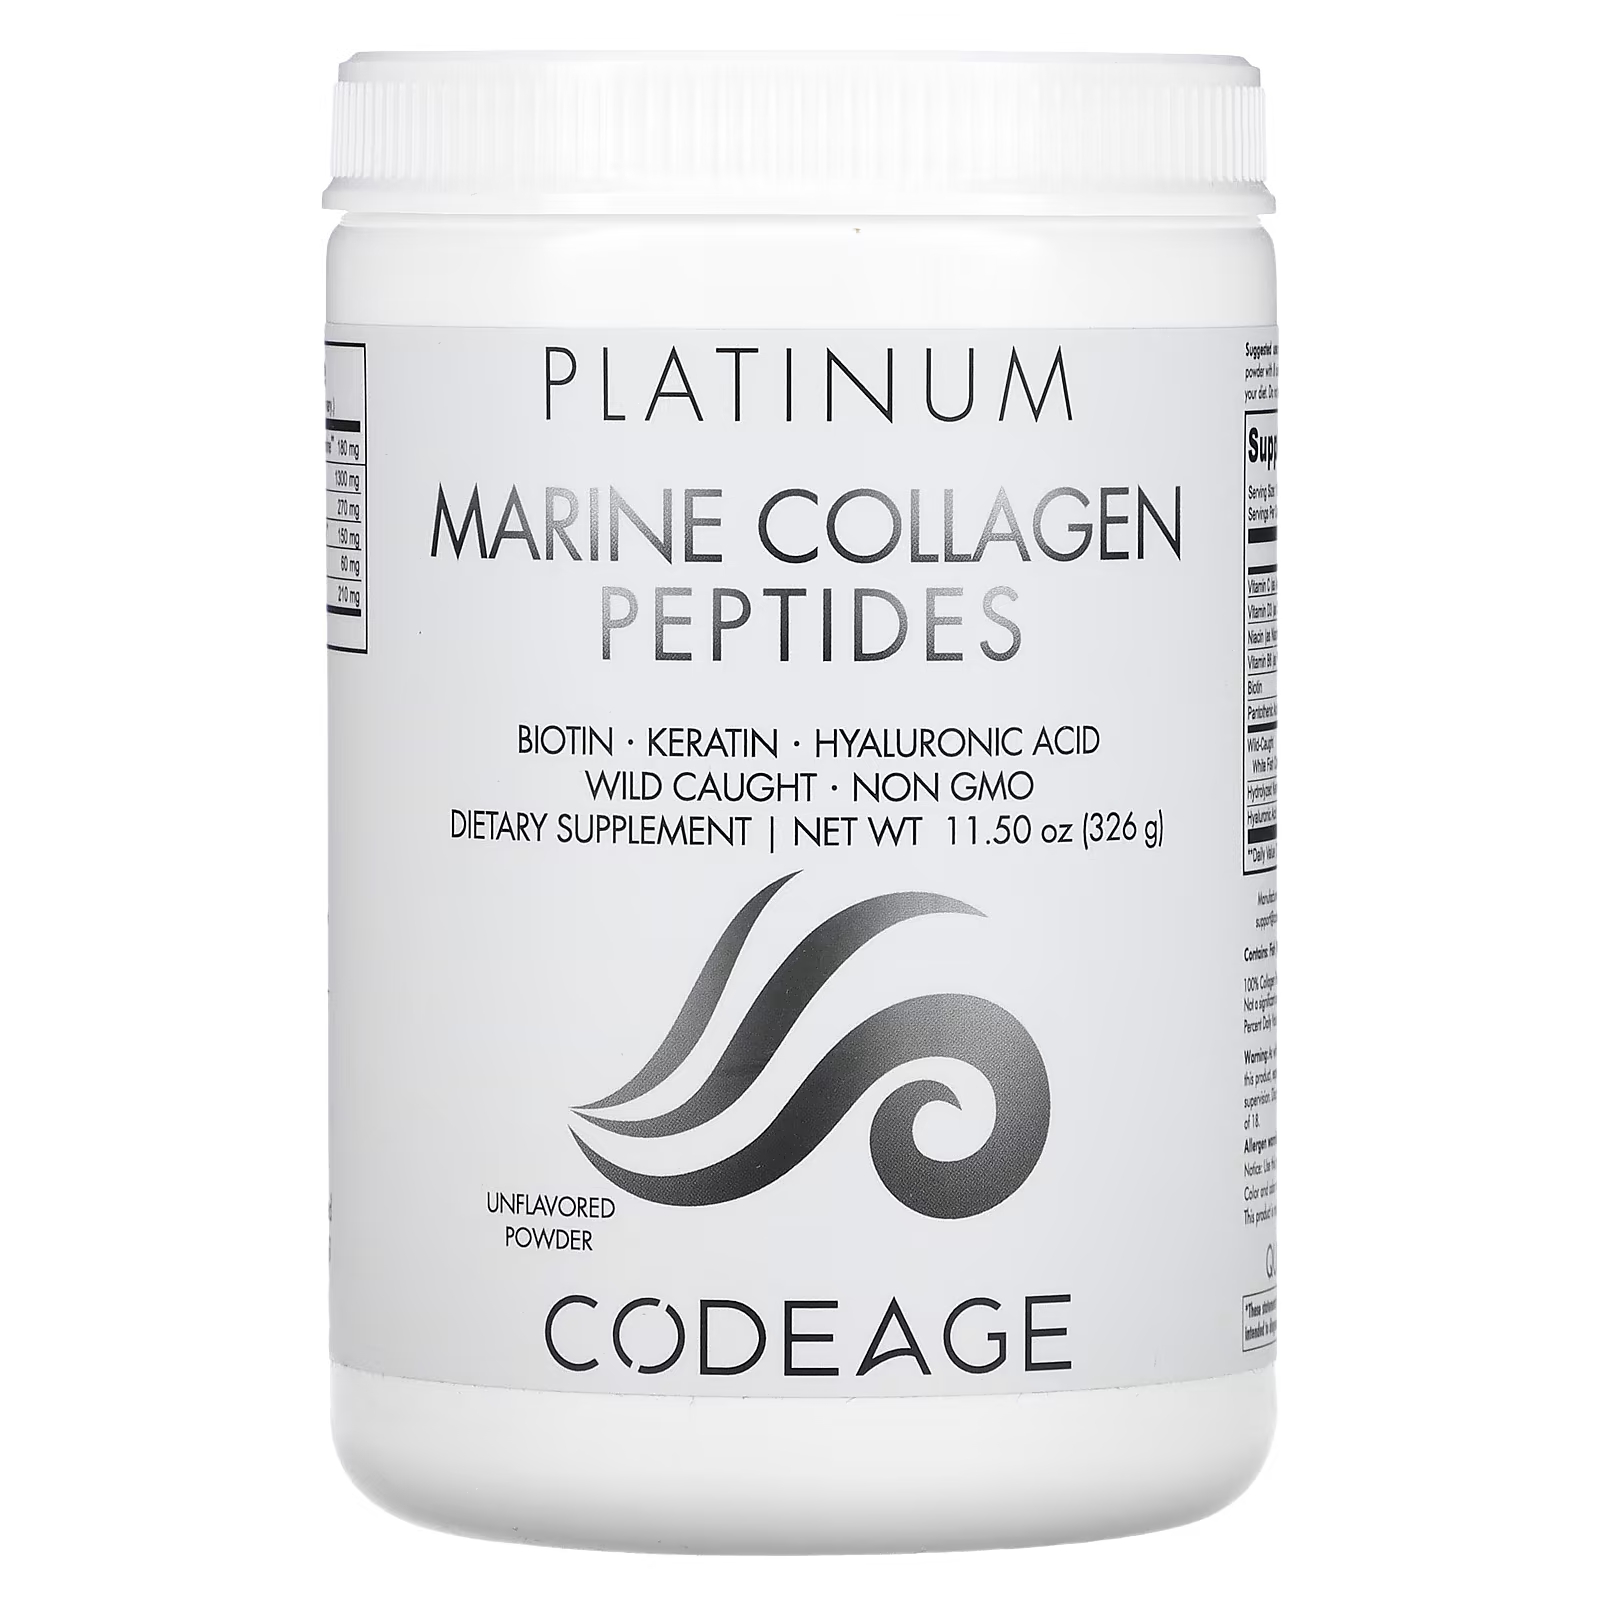 Пищевая добавка Codeage Platinum пептиды морского коллагена без вкуса, 326г codeage platinum пептиды морского коллагена без добавок 326 г 11 5 унции